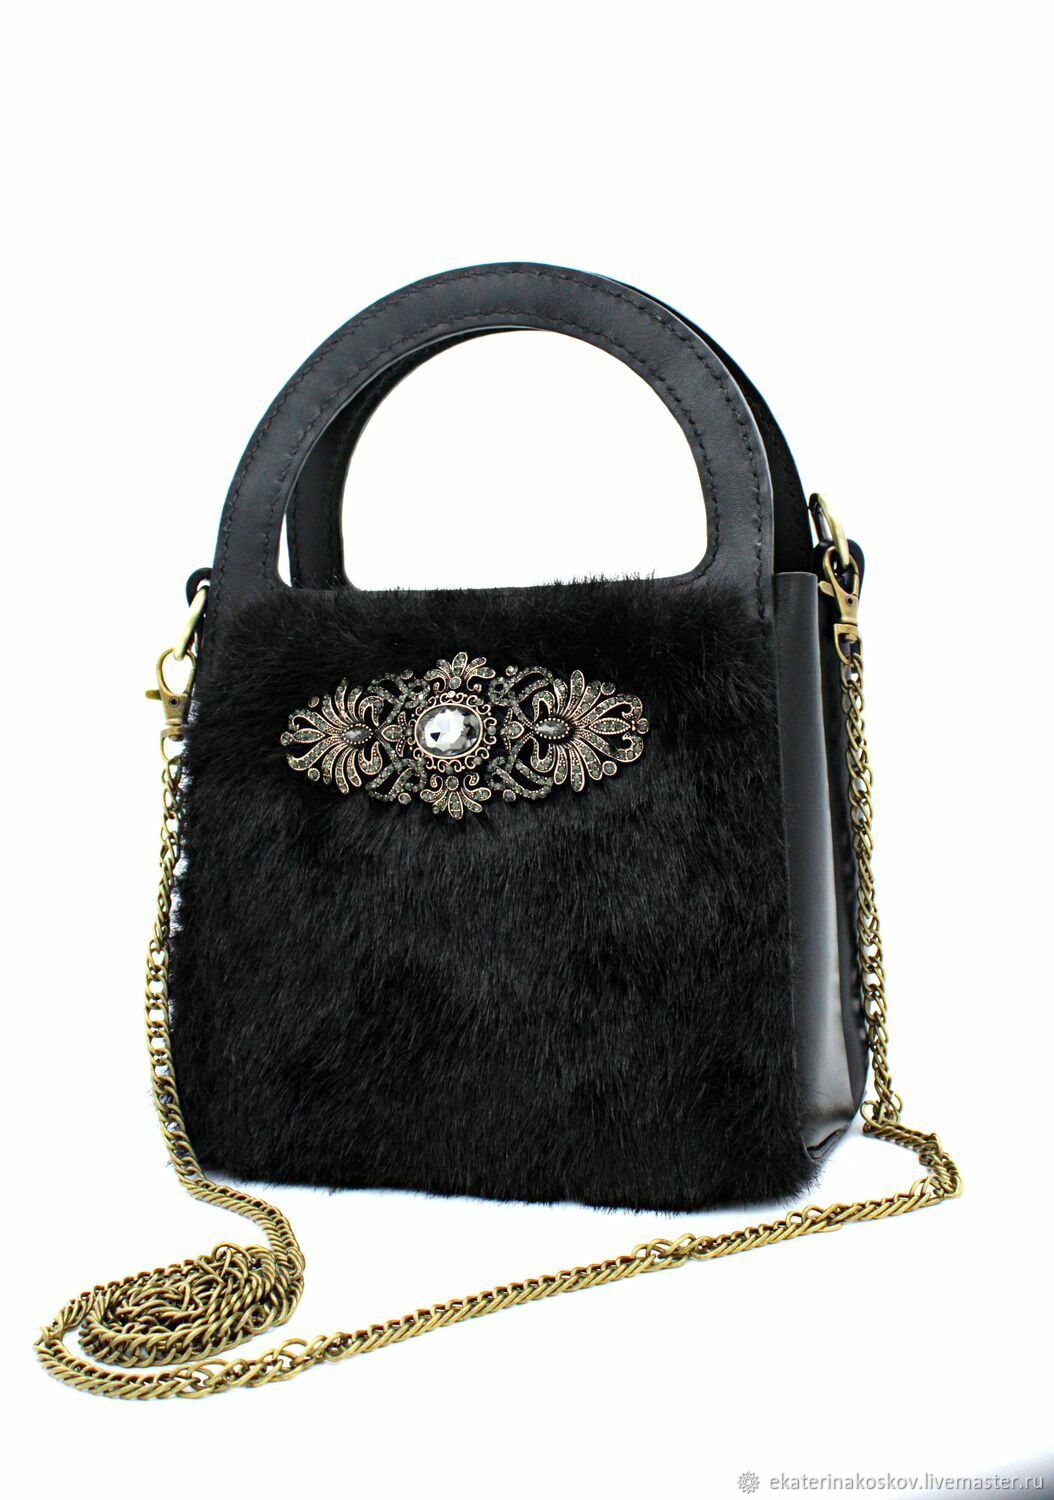  Женская кожаная черная сумка с мехом, Классическая сумка, Санкт-Петербург,  Фото №1